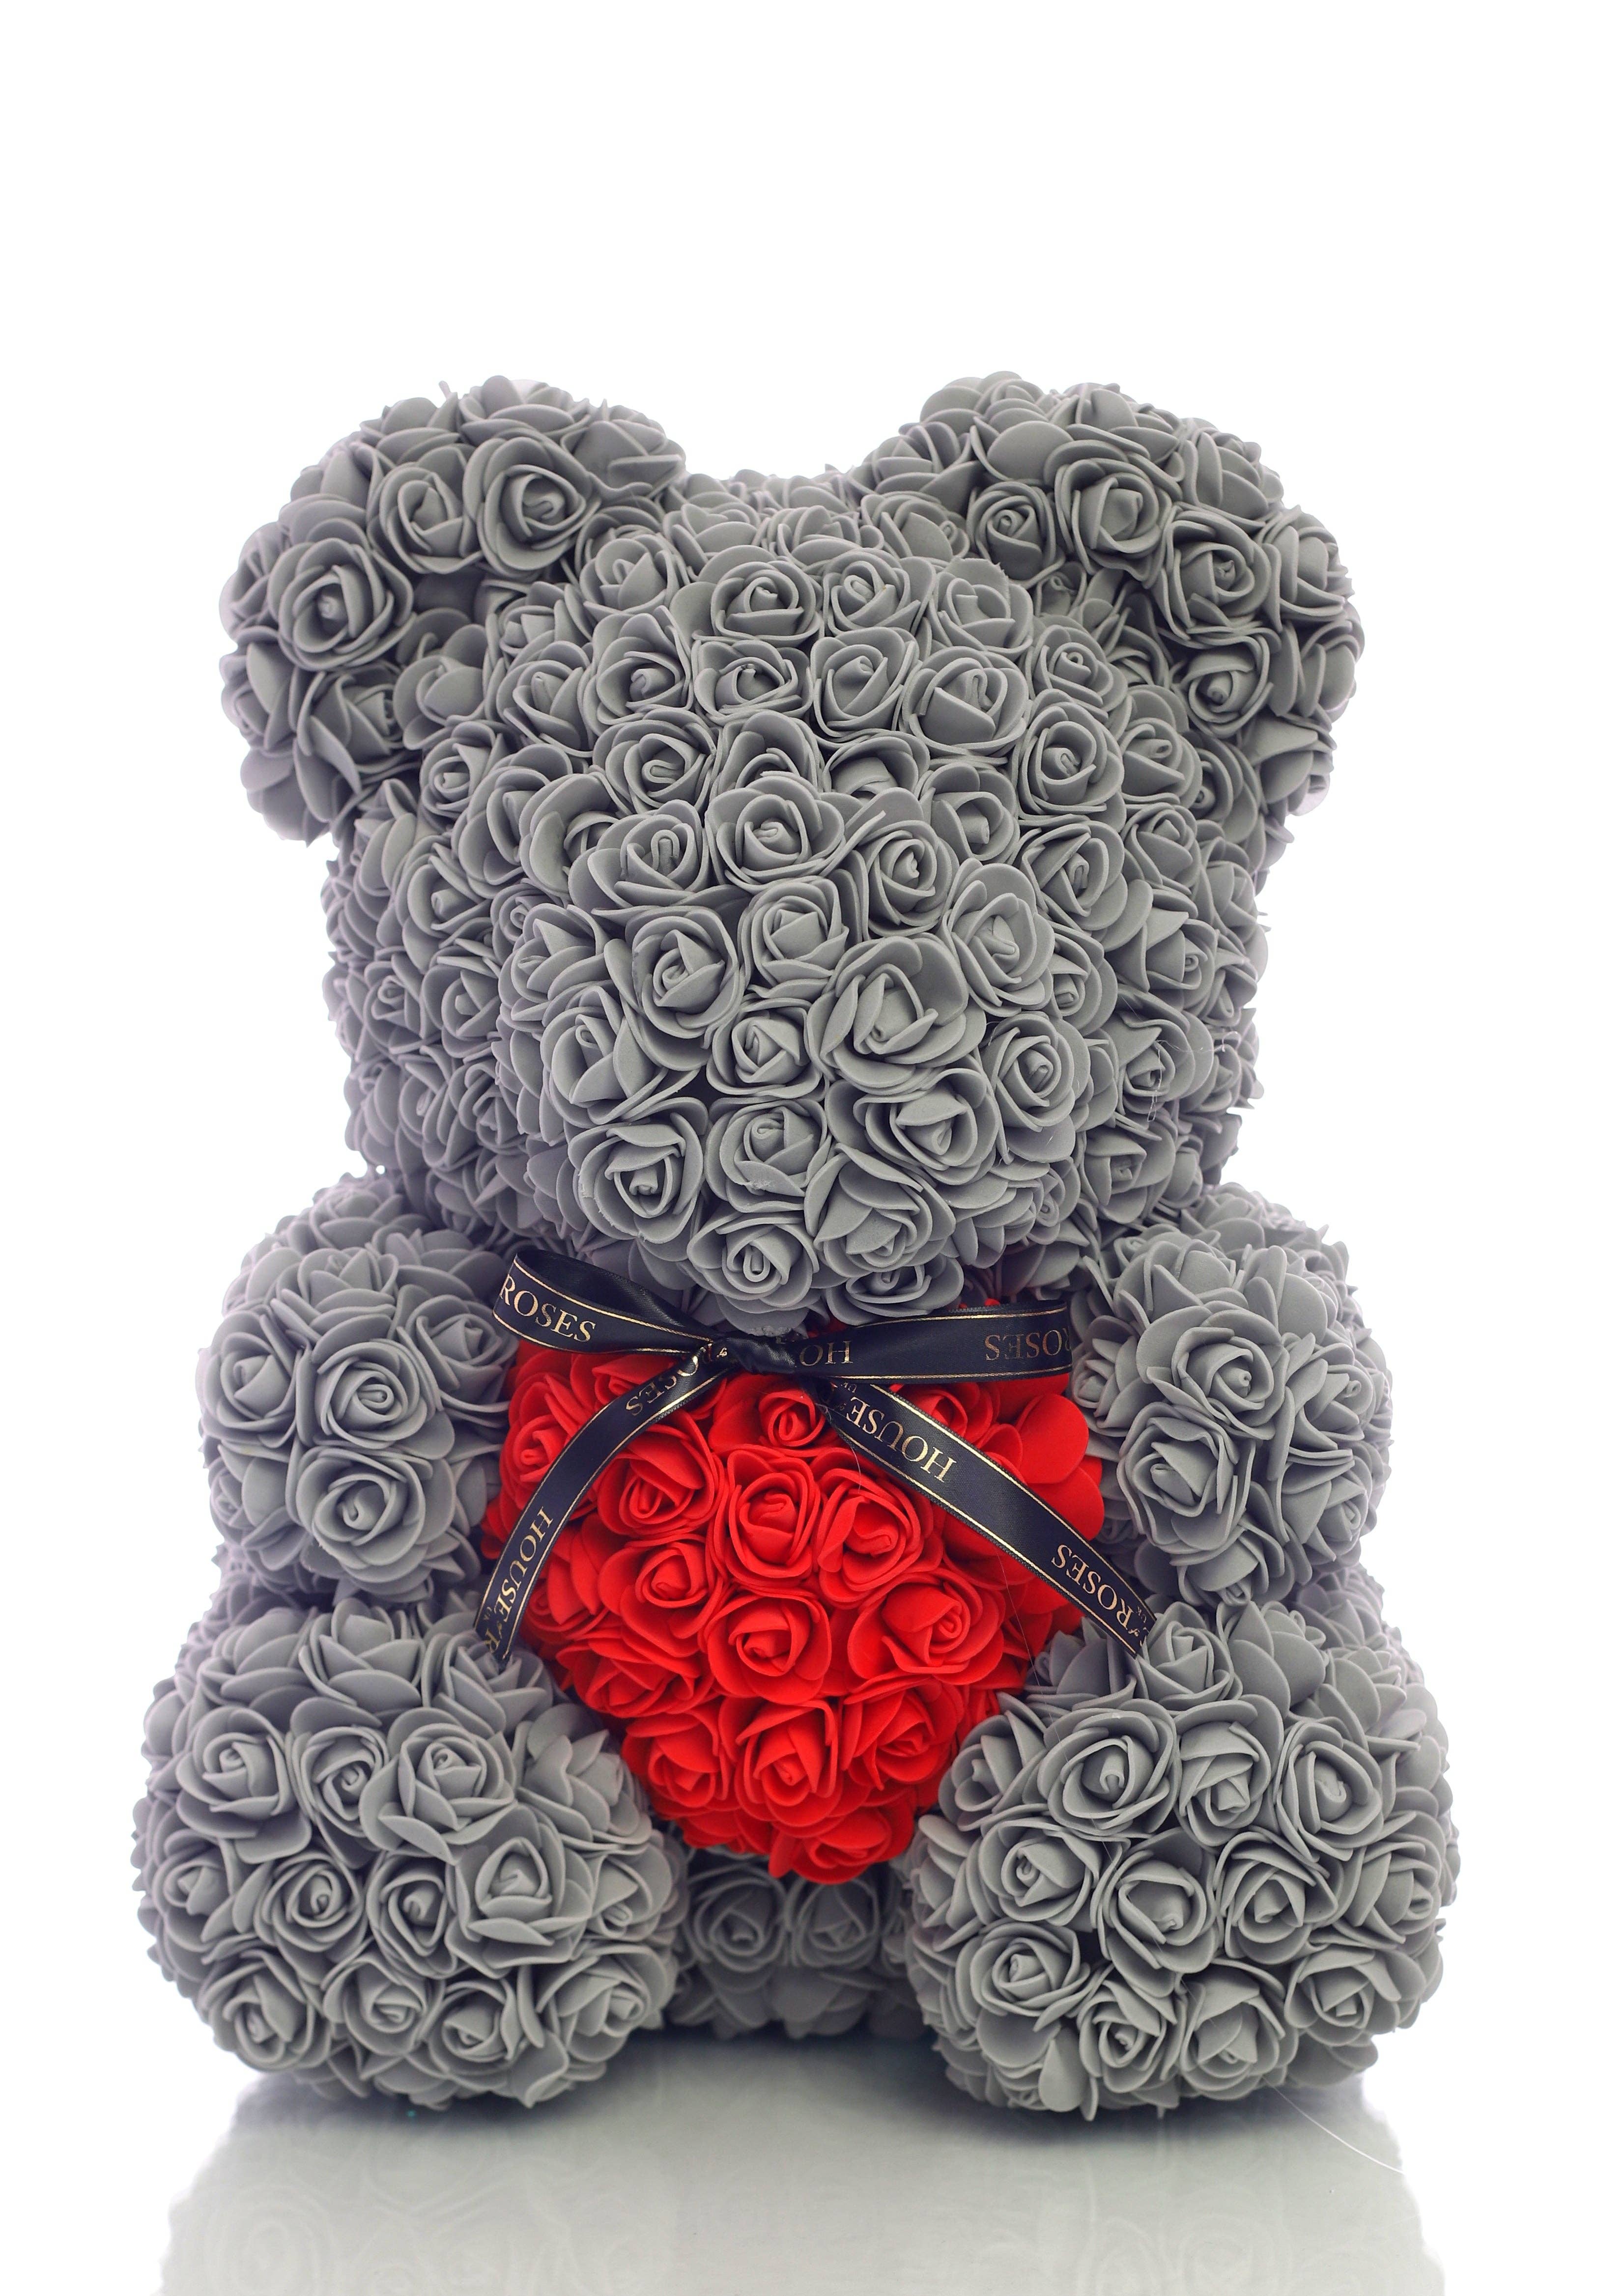 CUORE TENERO AMORE orso alta 12" con sacchetto regalo compleanno fidanzamento anniversario 